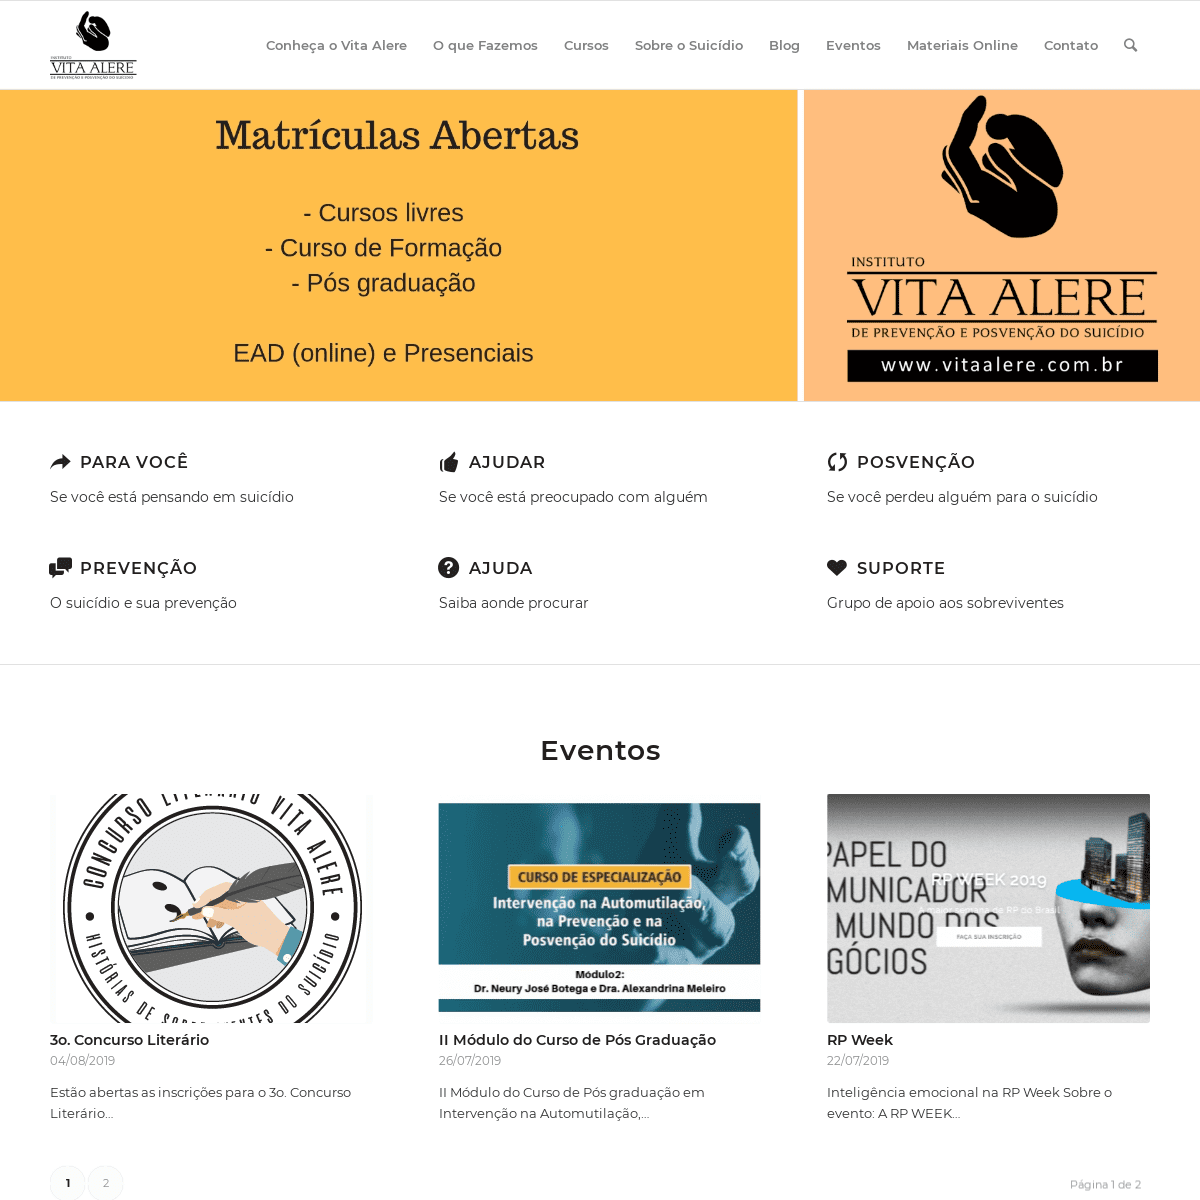 Homepage - Instituto Vita Alere de Prevenção e Posvenção do Suicídio